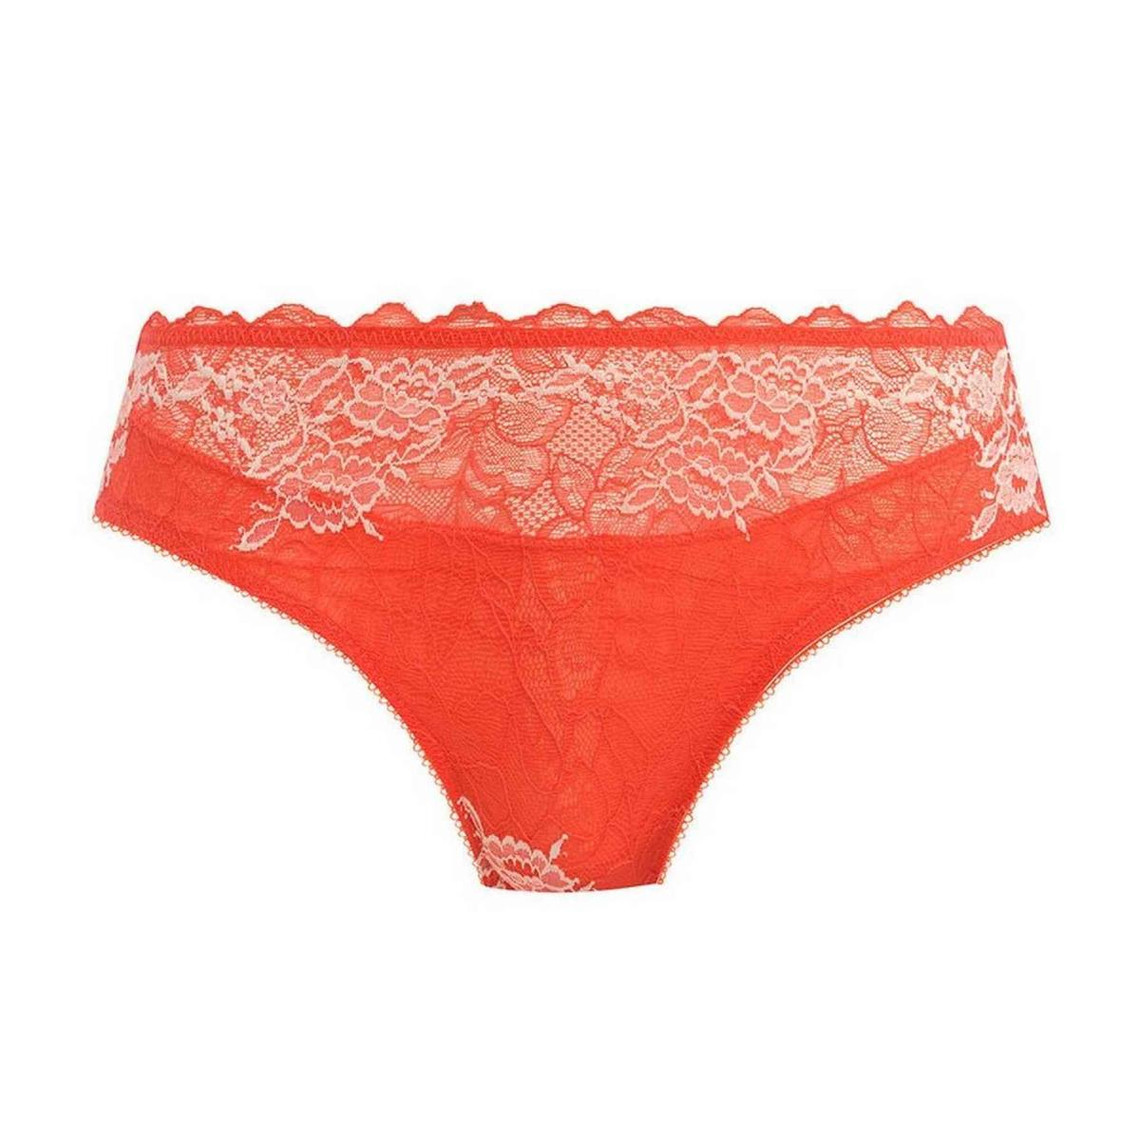 Culotte Classique - Orange Wacoal lingerie en nylon